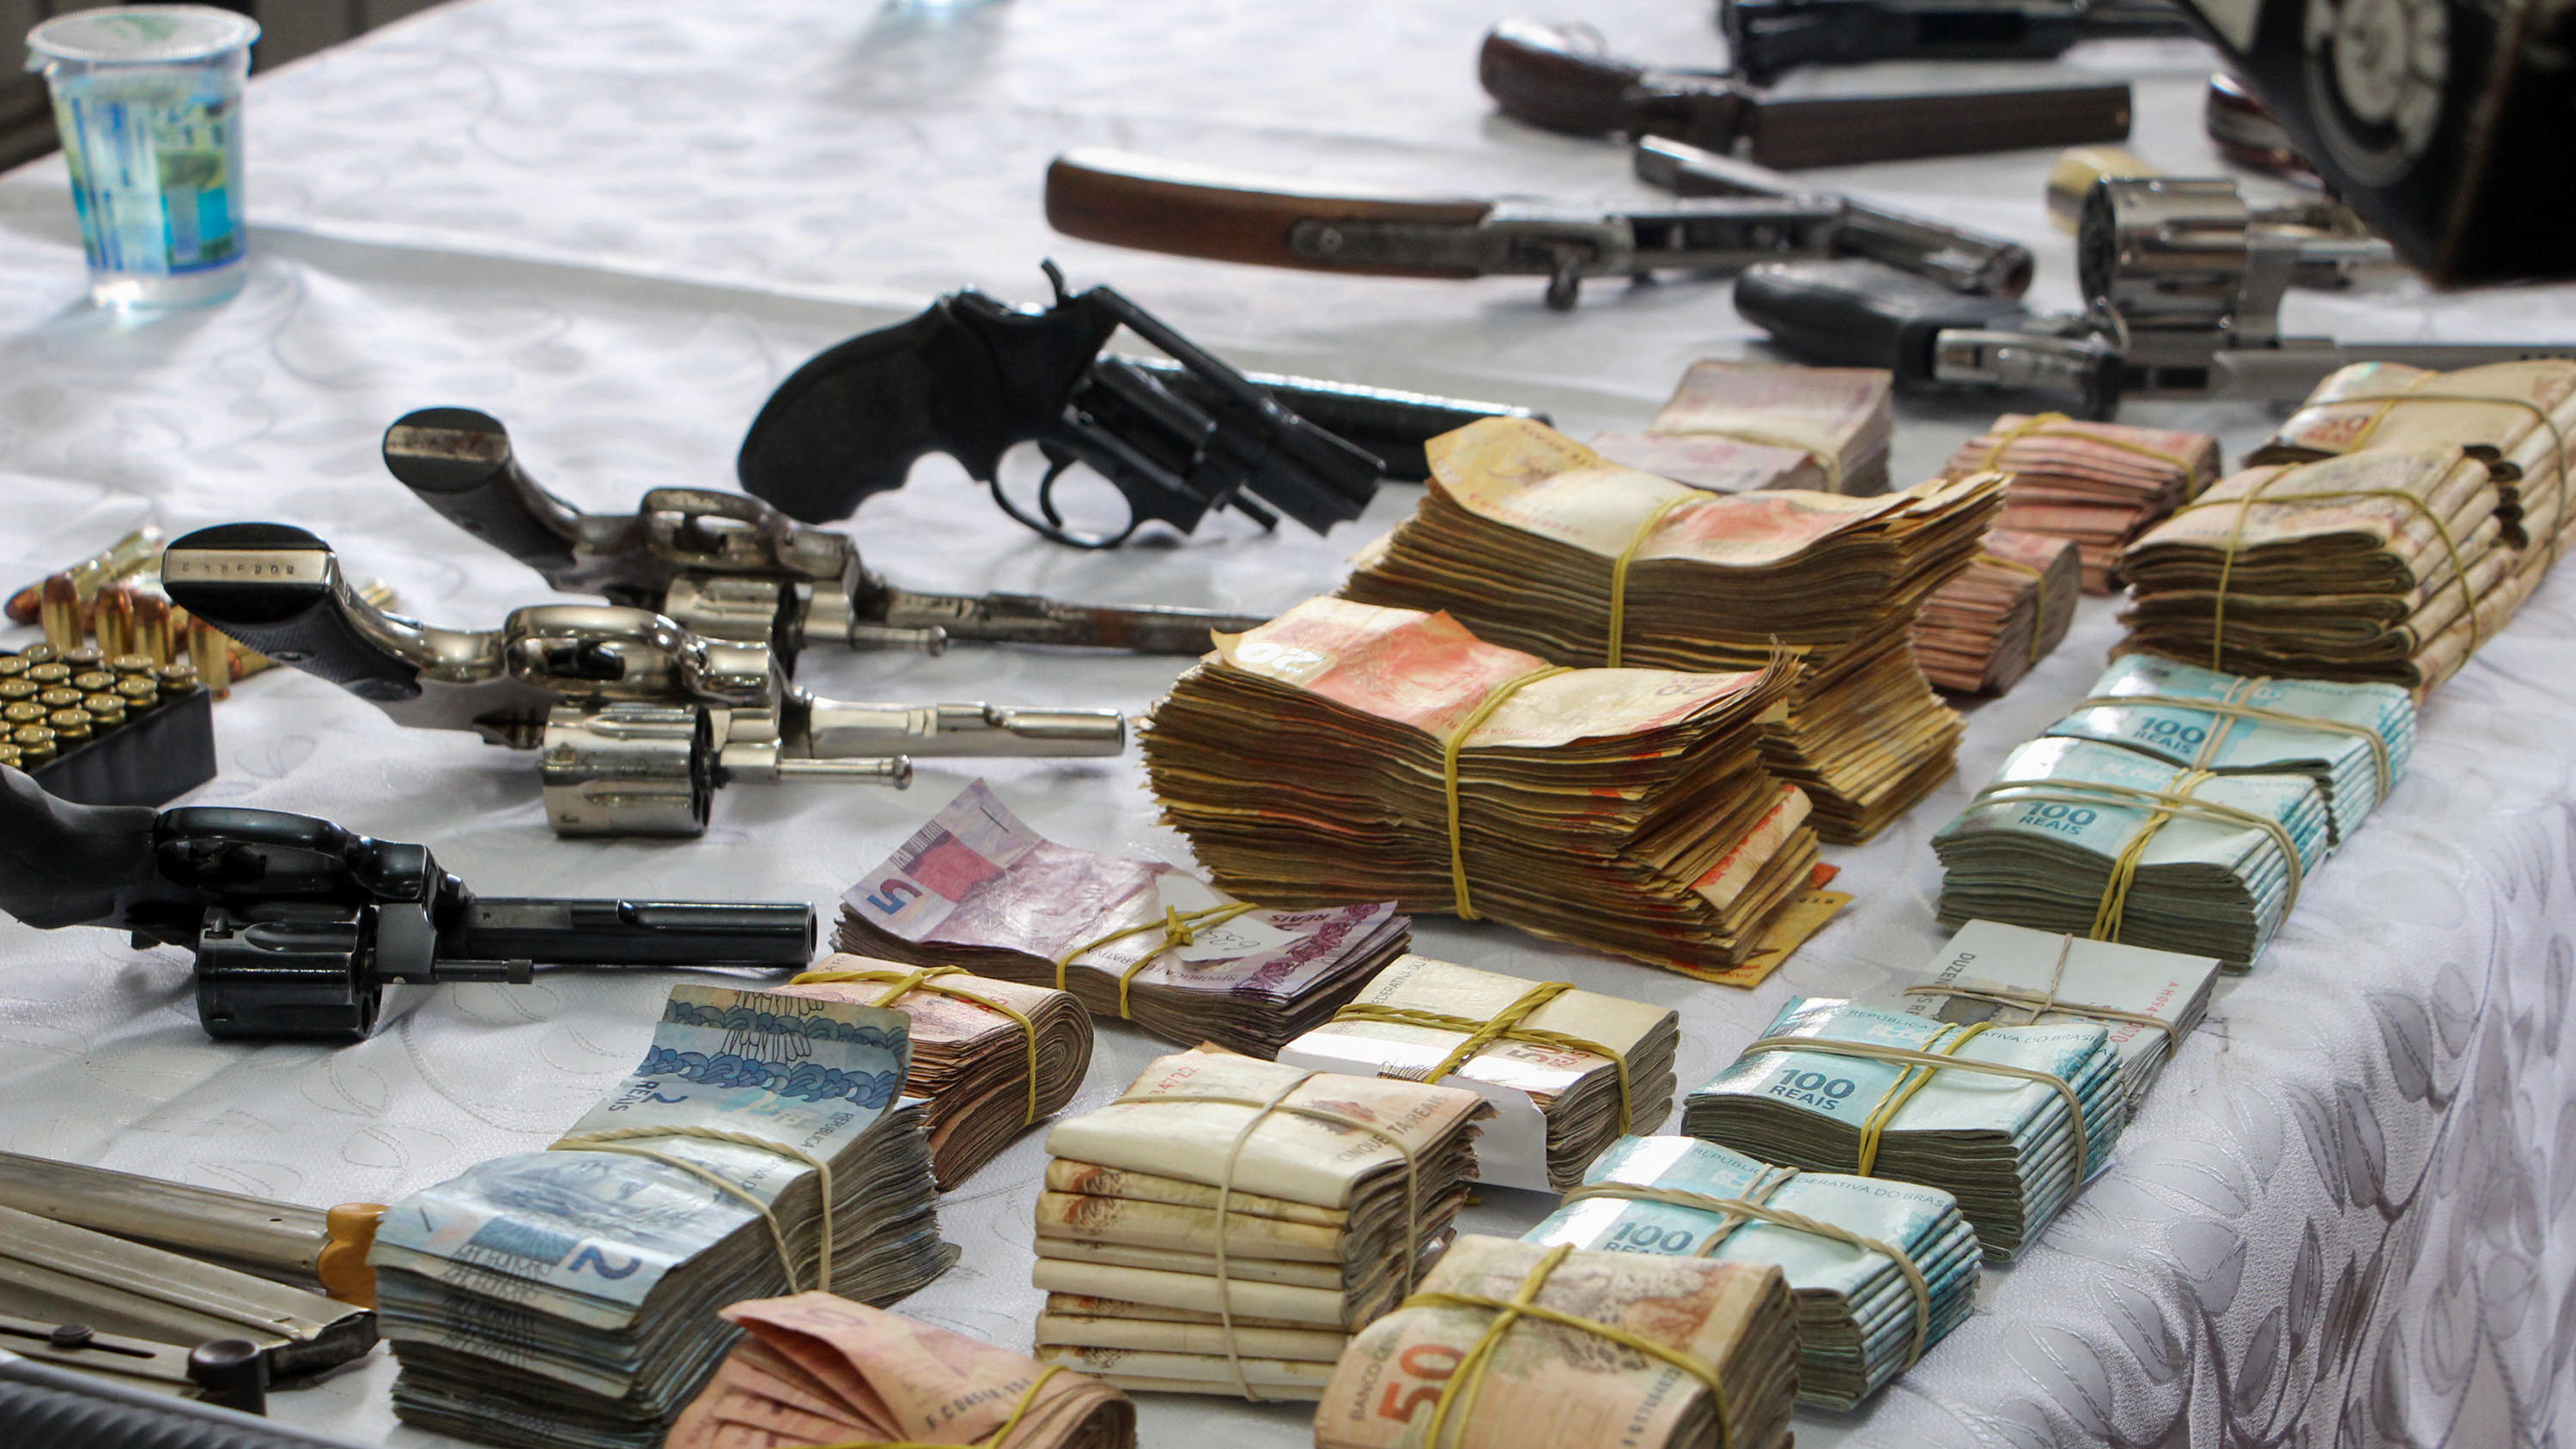 In Brasilien kam die Militärpolizei einem Drogenkartell auf die Schliche und beschlagnahmte unter anderem 35 Schusswaffen und Bargeld.